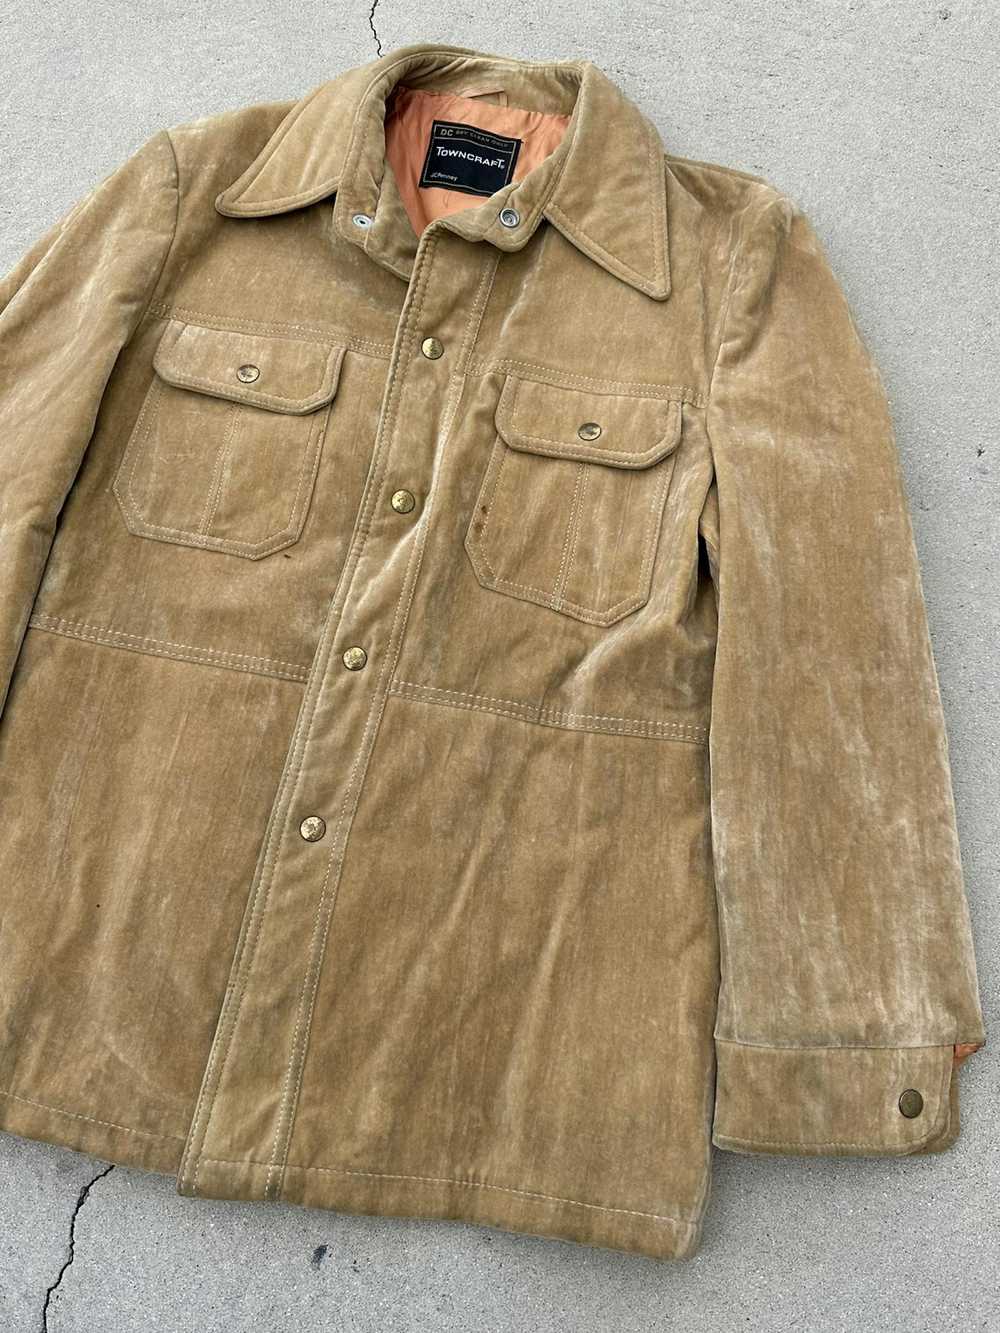 J.C. Penney × Leather Jacket × Vintage 70s Vintag… - image 5